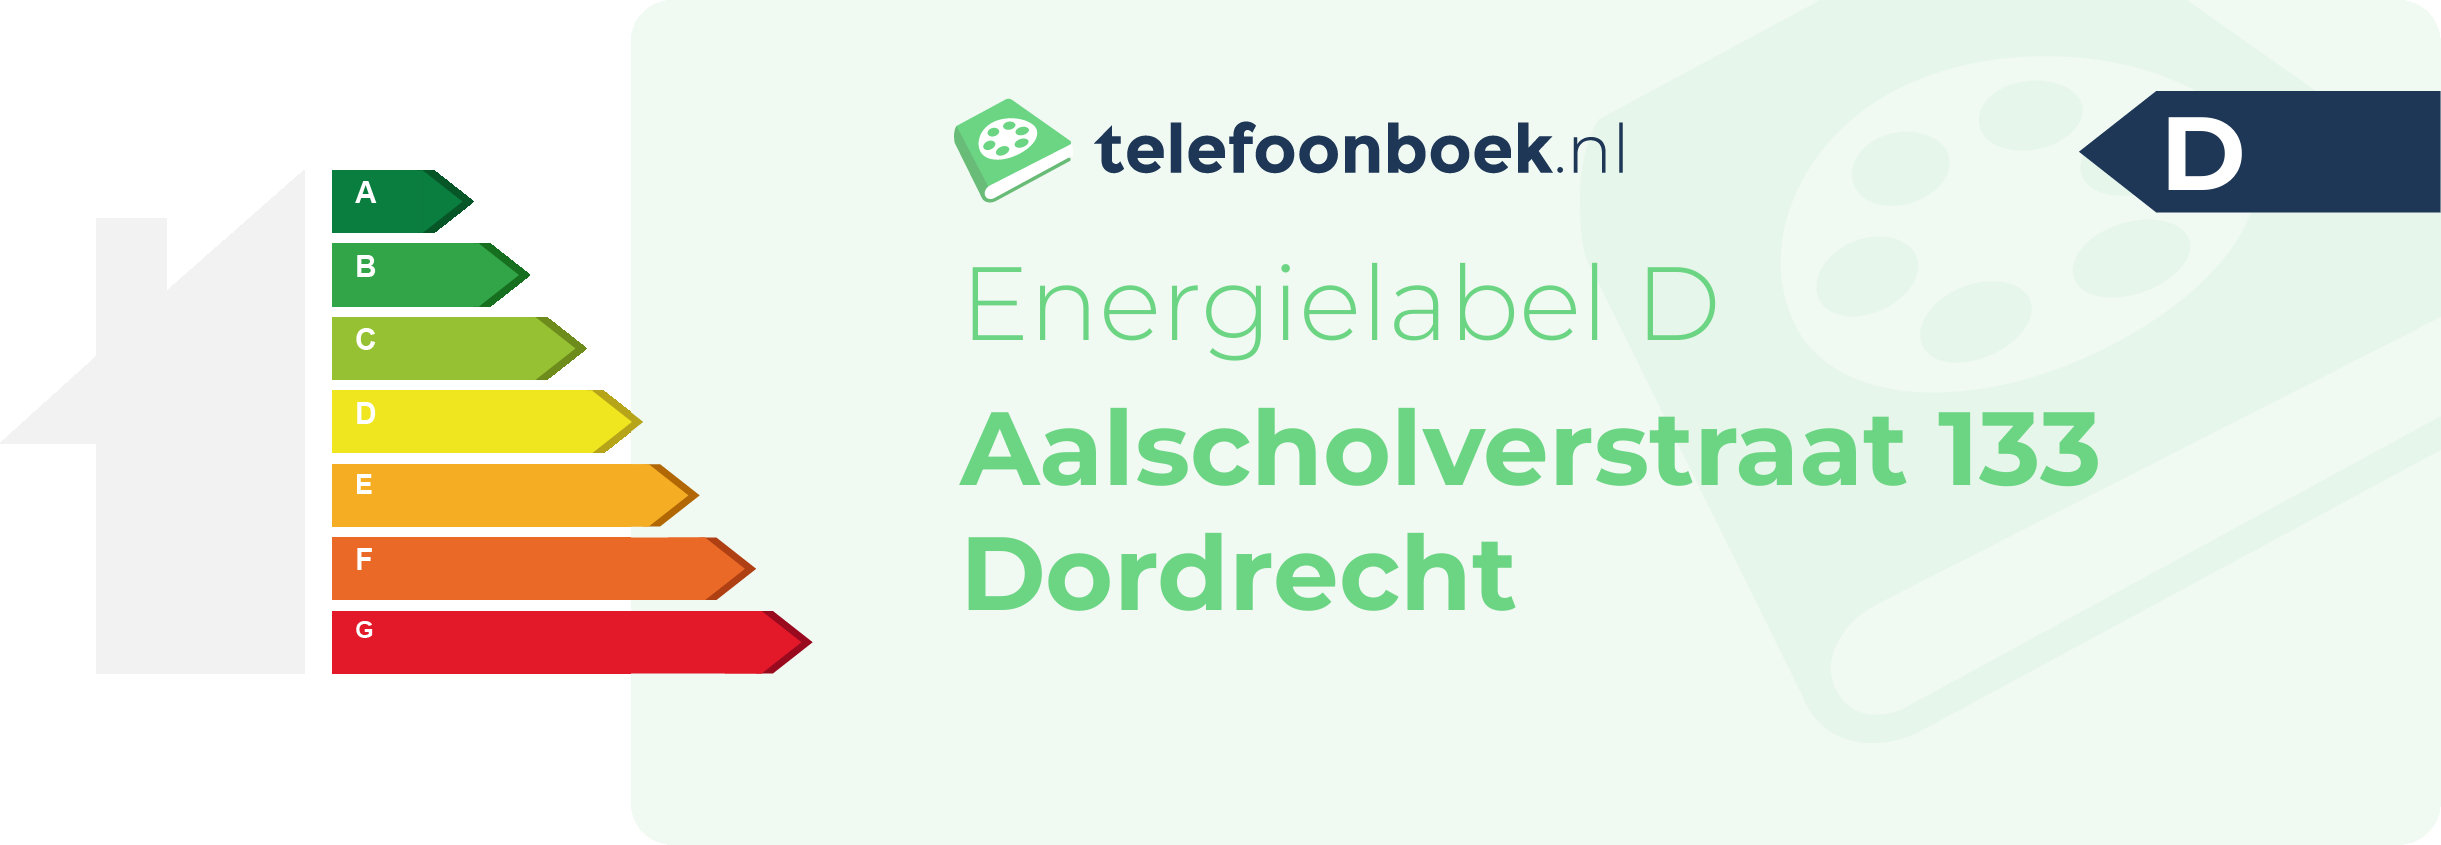 Energielabel Aalscholverstraat 133 Dordrecht